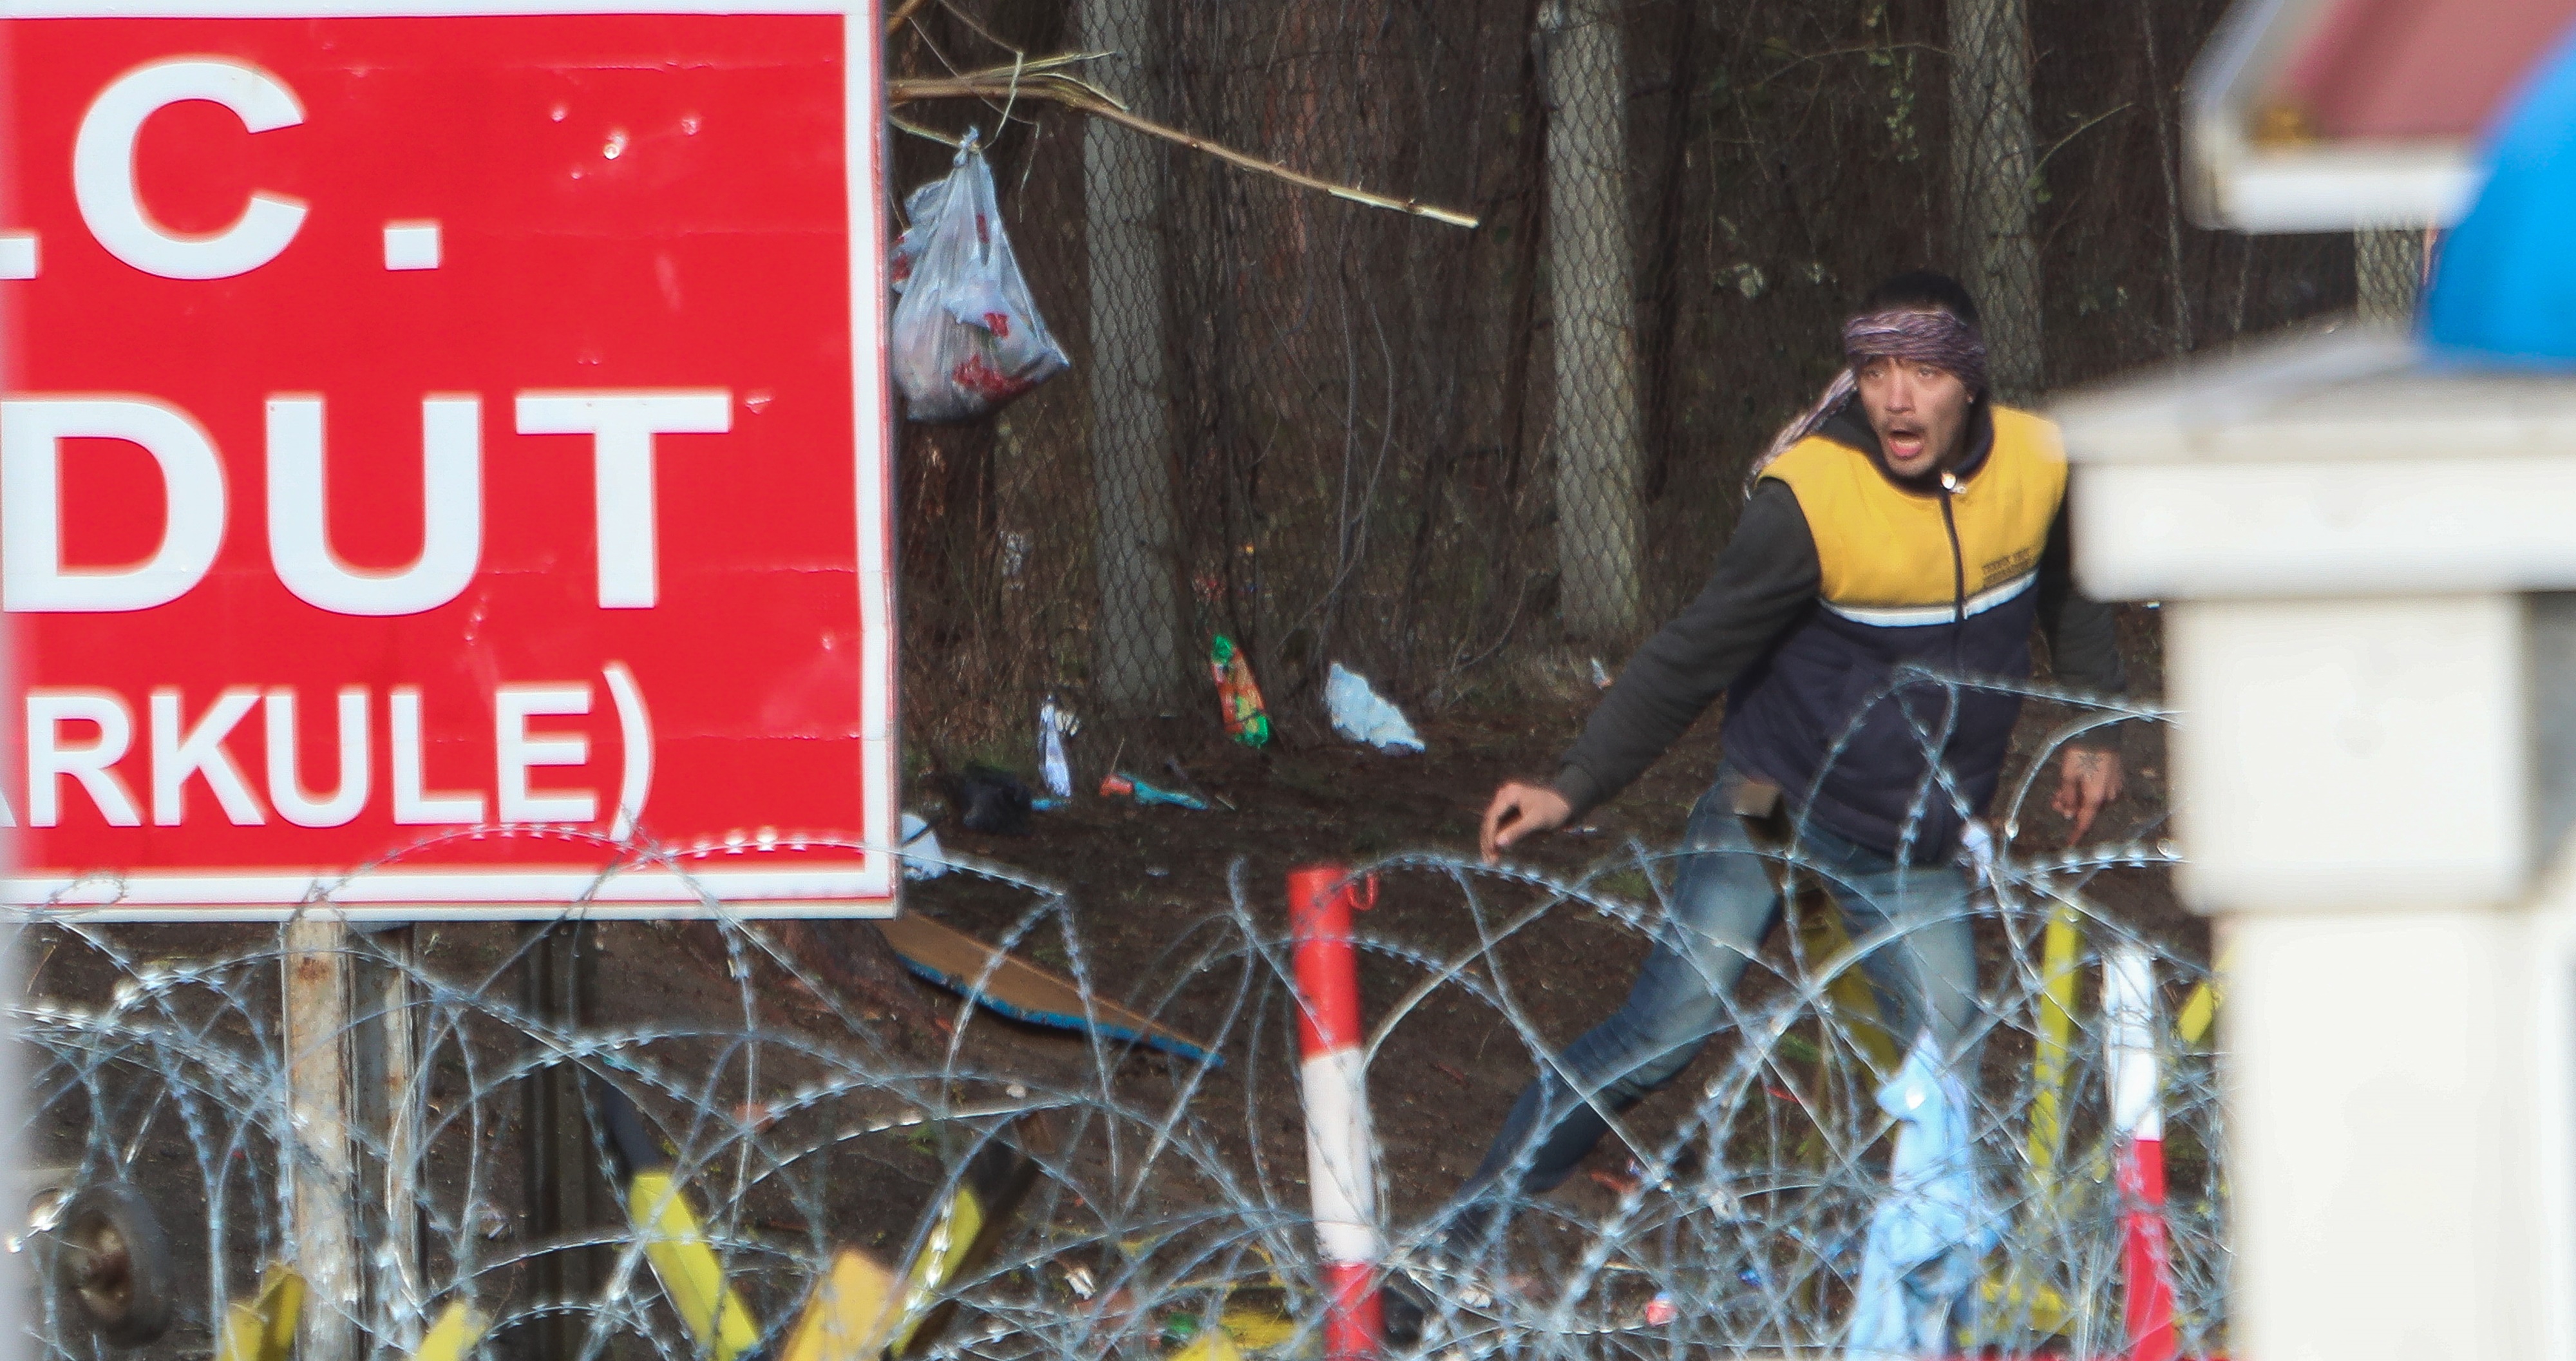 Έβρος τώρα: Τούρκοι ρίχνουν χημικά – Για να περάσουν τα σύνορα οι μετανάστες